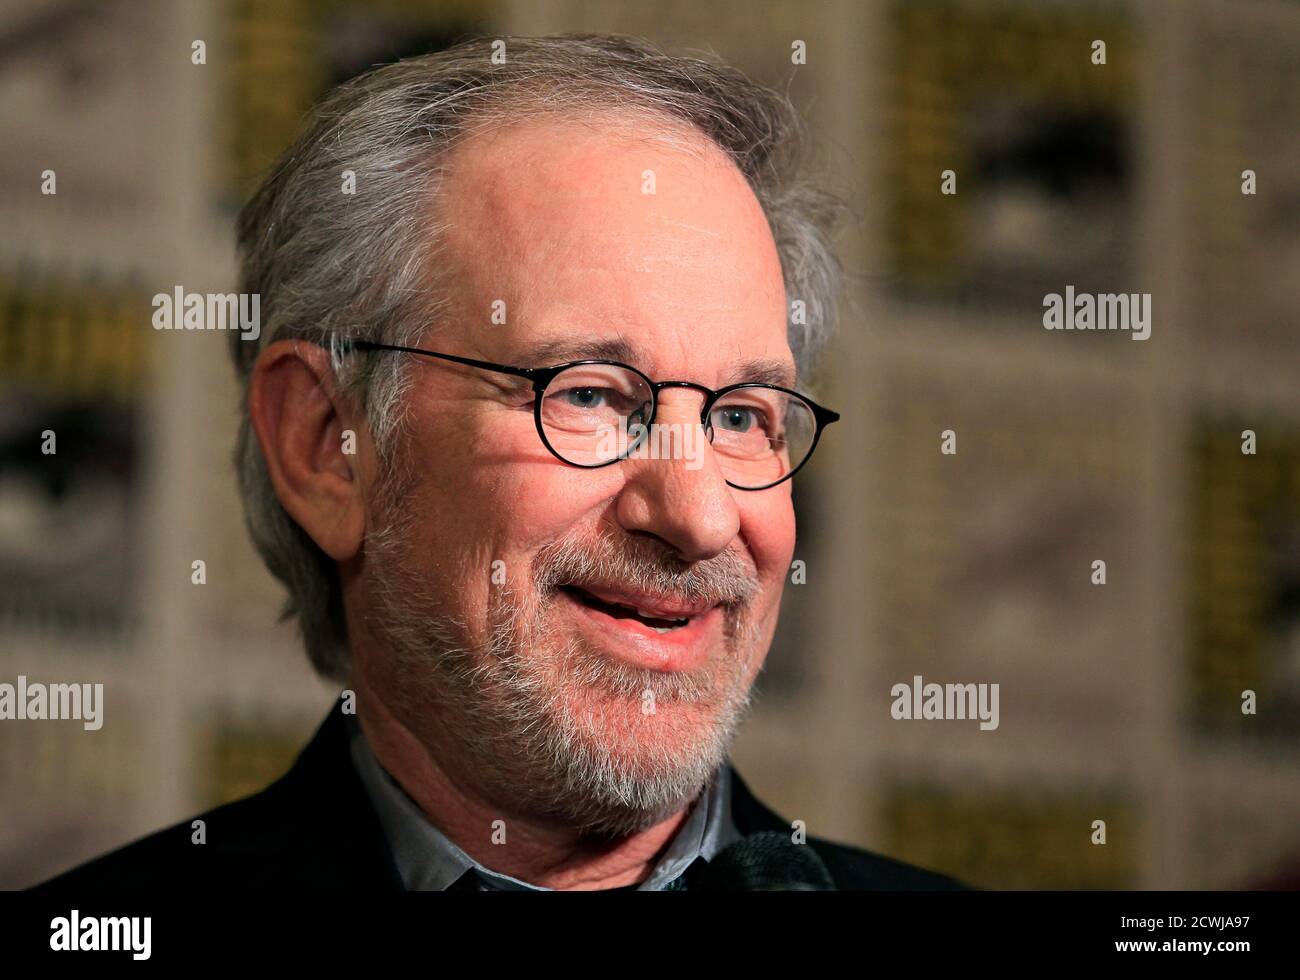 Il regista Steven Spielberg ha fatto la sua apparizione inaugurale al Comic con in promozione del suo prossimo film "The Adventures of Tin Tin" all'evento di cultura pop a San Diego, California, il 22 luglio 2011. REUTERS/Mike Blake (STATI UNITI - Tag: PROFILO DELLA SOCIETÀ DI INTRATTENIMENTO) Foto Stock